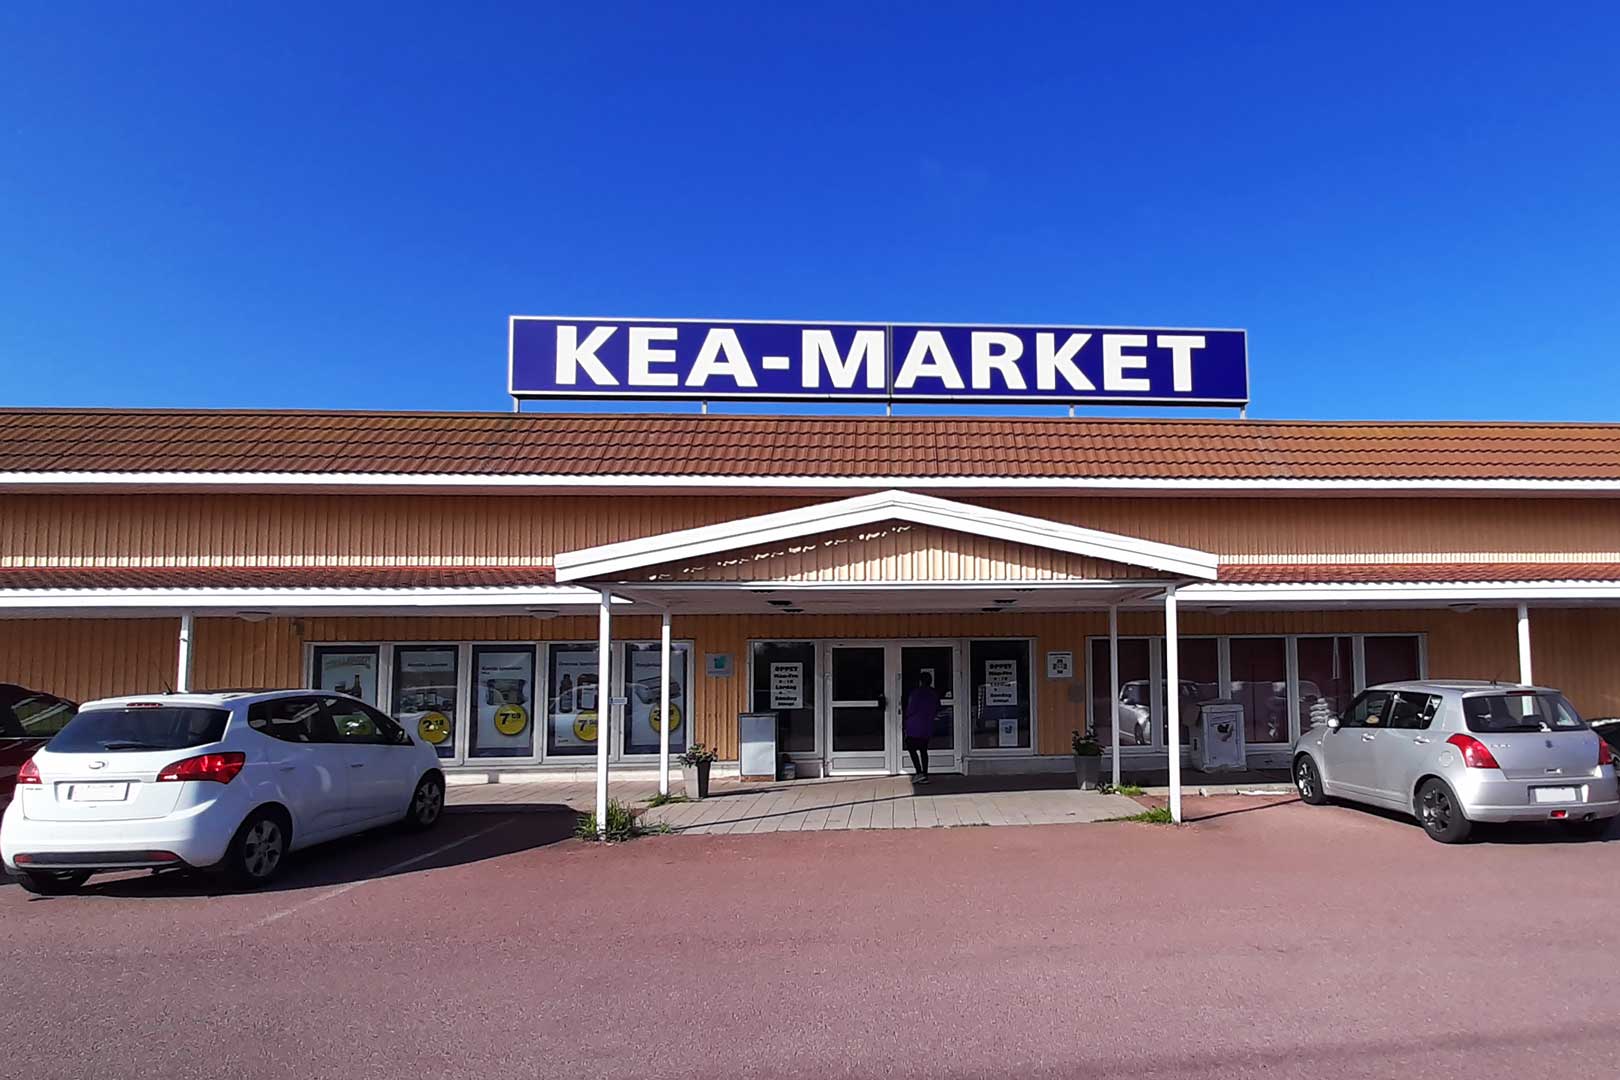 KEA-market supermarket in Finland